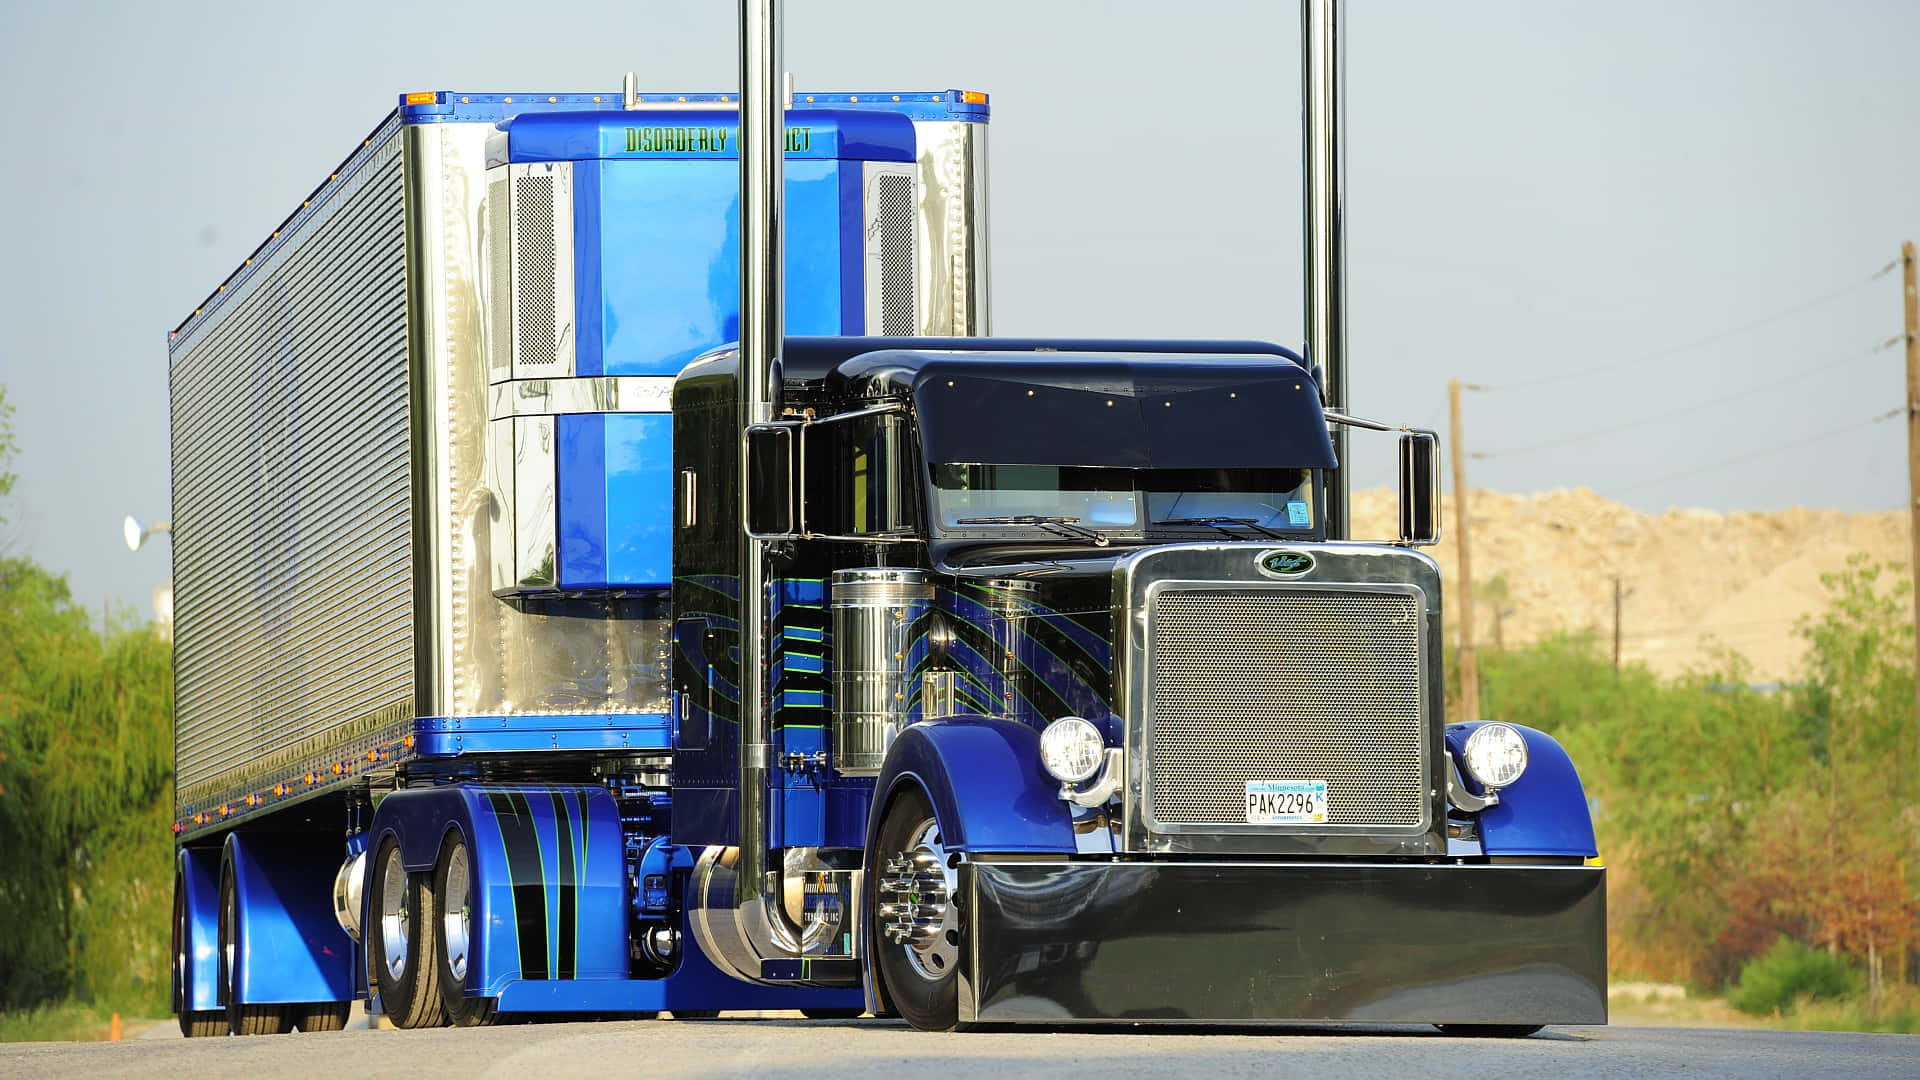 A Blue Semi Truck